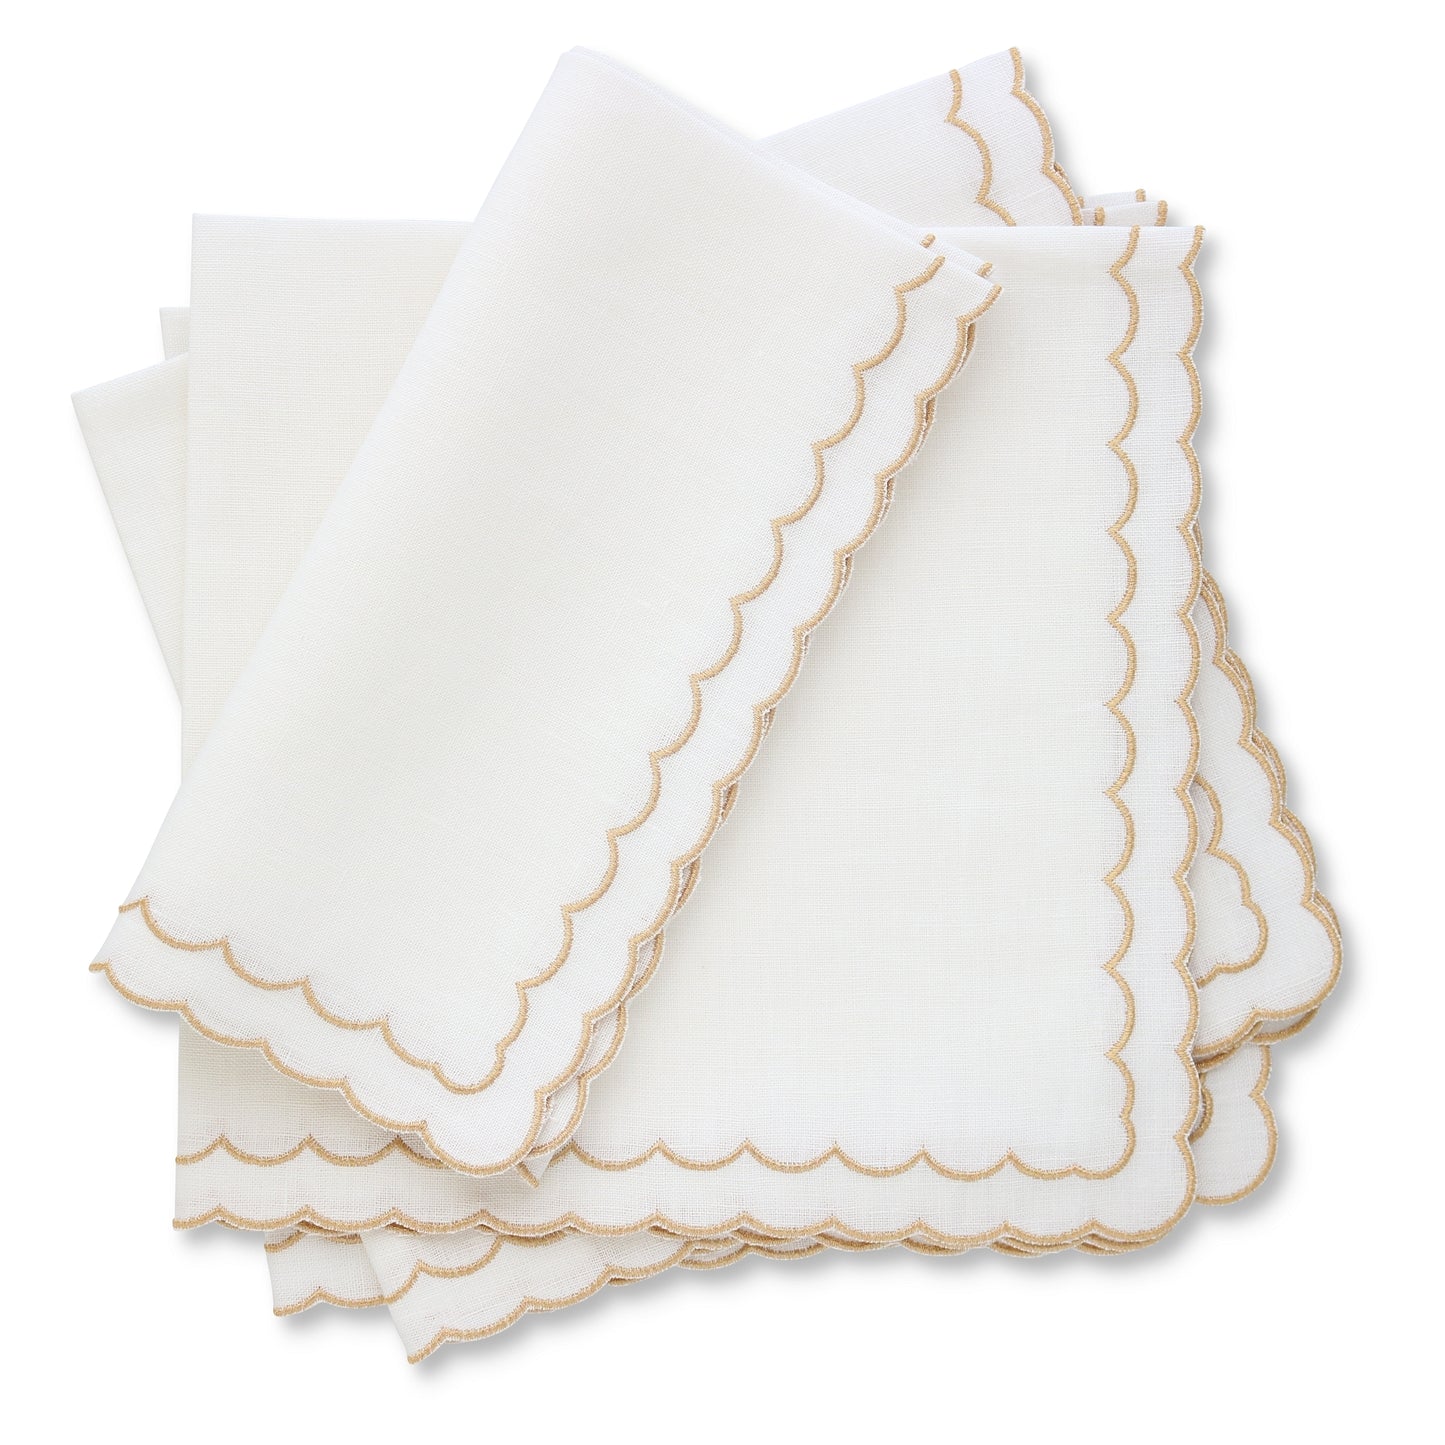 White napkins with gold metallic scallops